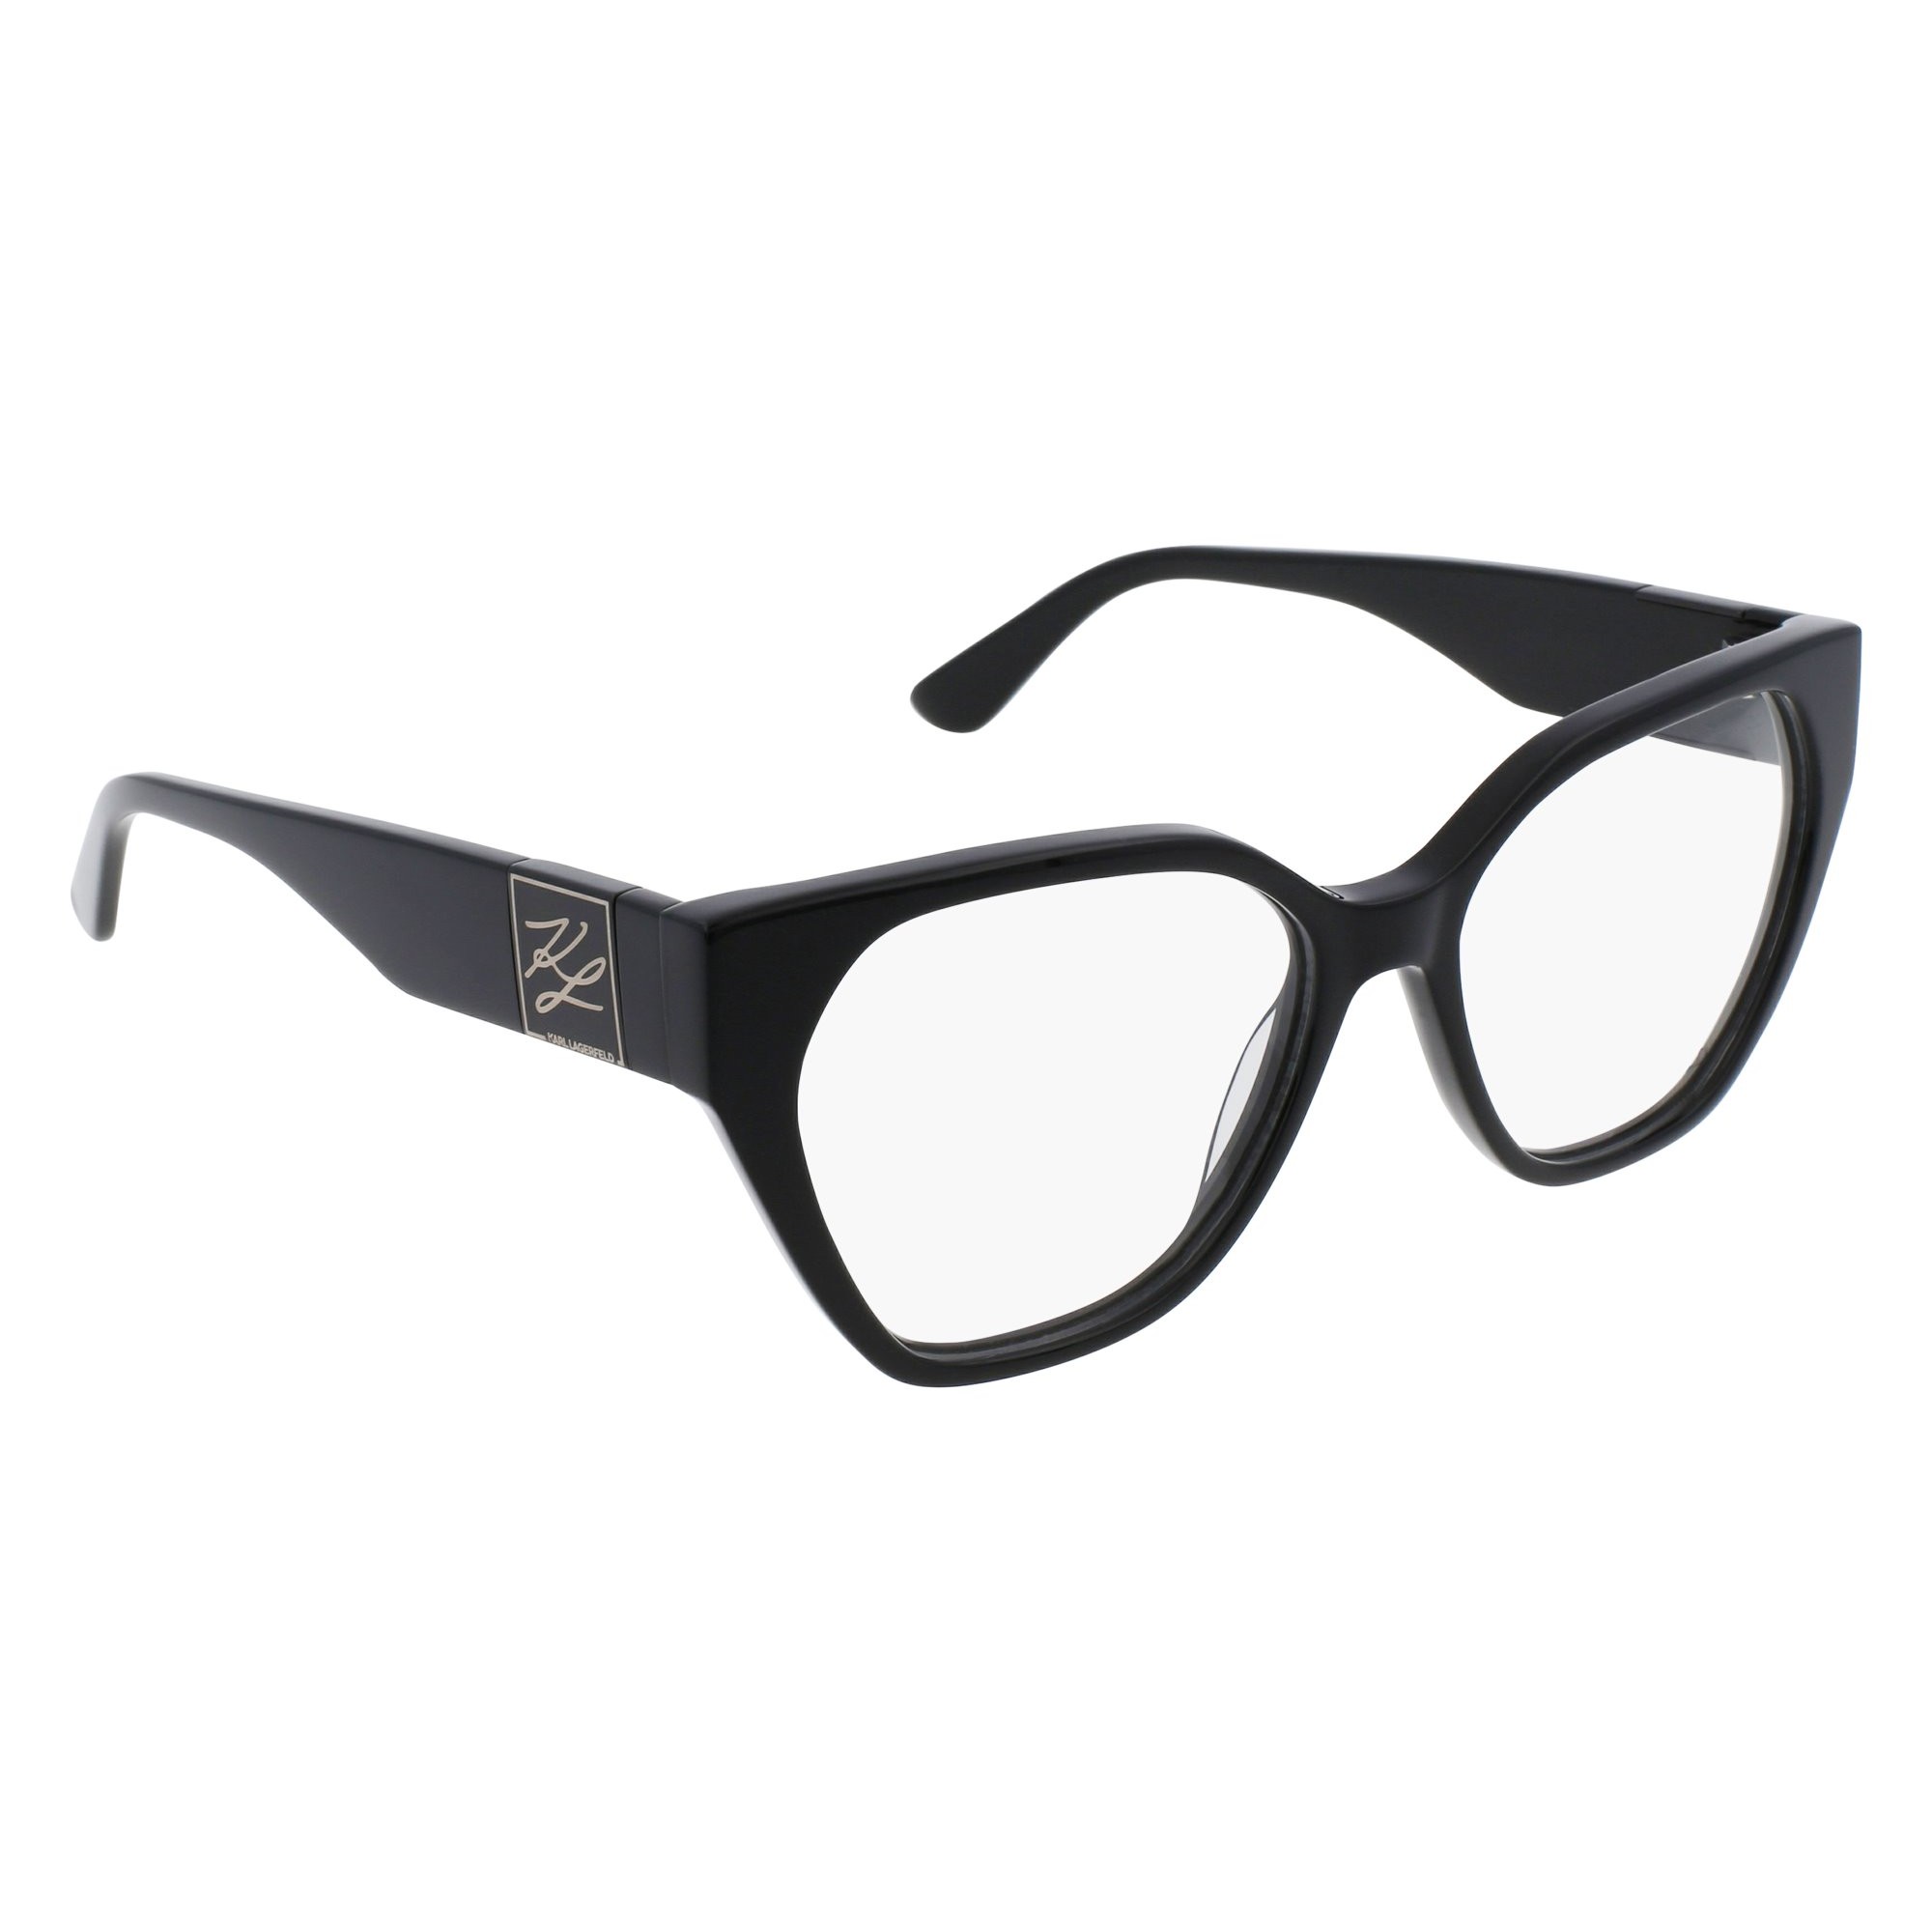 Karl Lagerfeld KL 6053 - 001 Black | Eyeglasses Woman